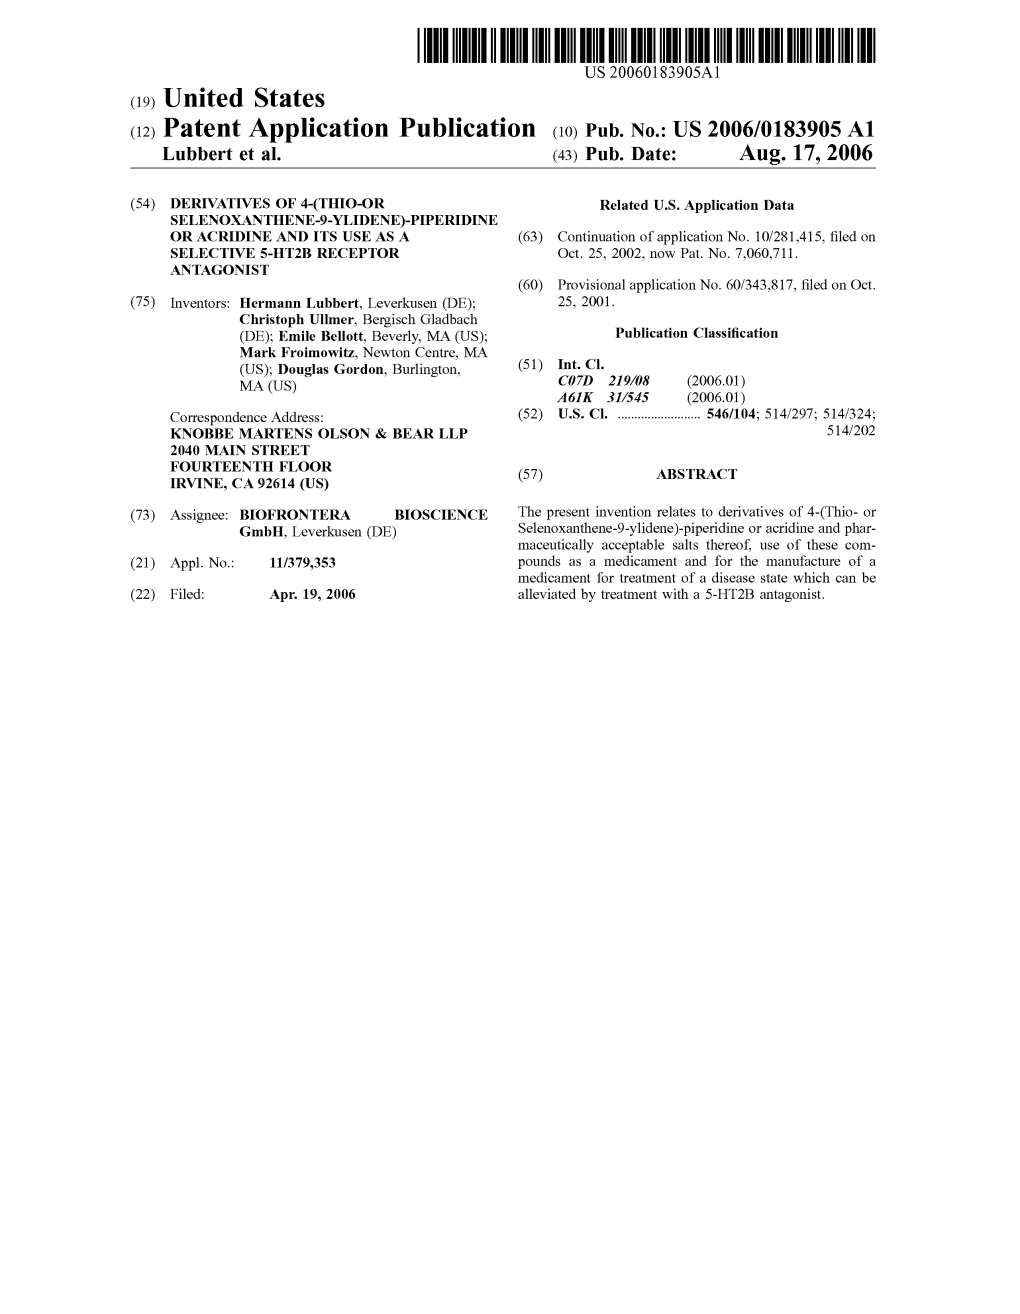 (12) Patent Application Publication (10) Pub. No.: US 2006/0183905 A1 Lubbert Et Al